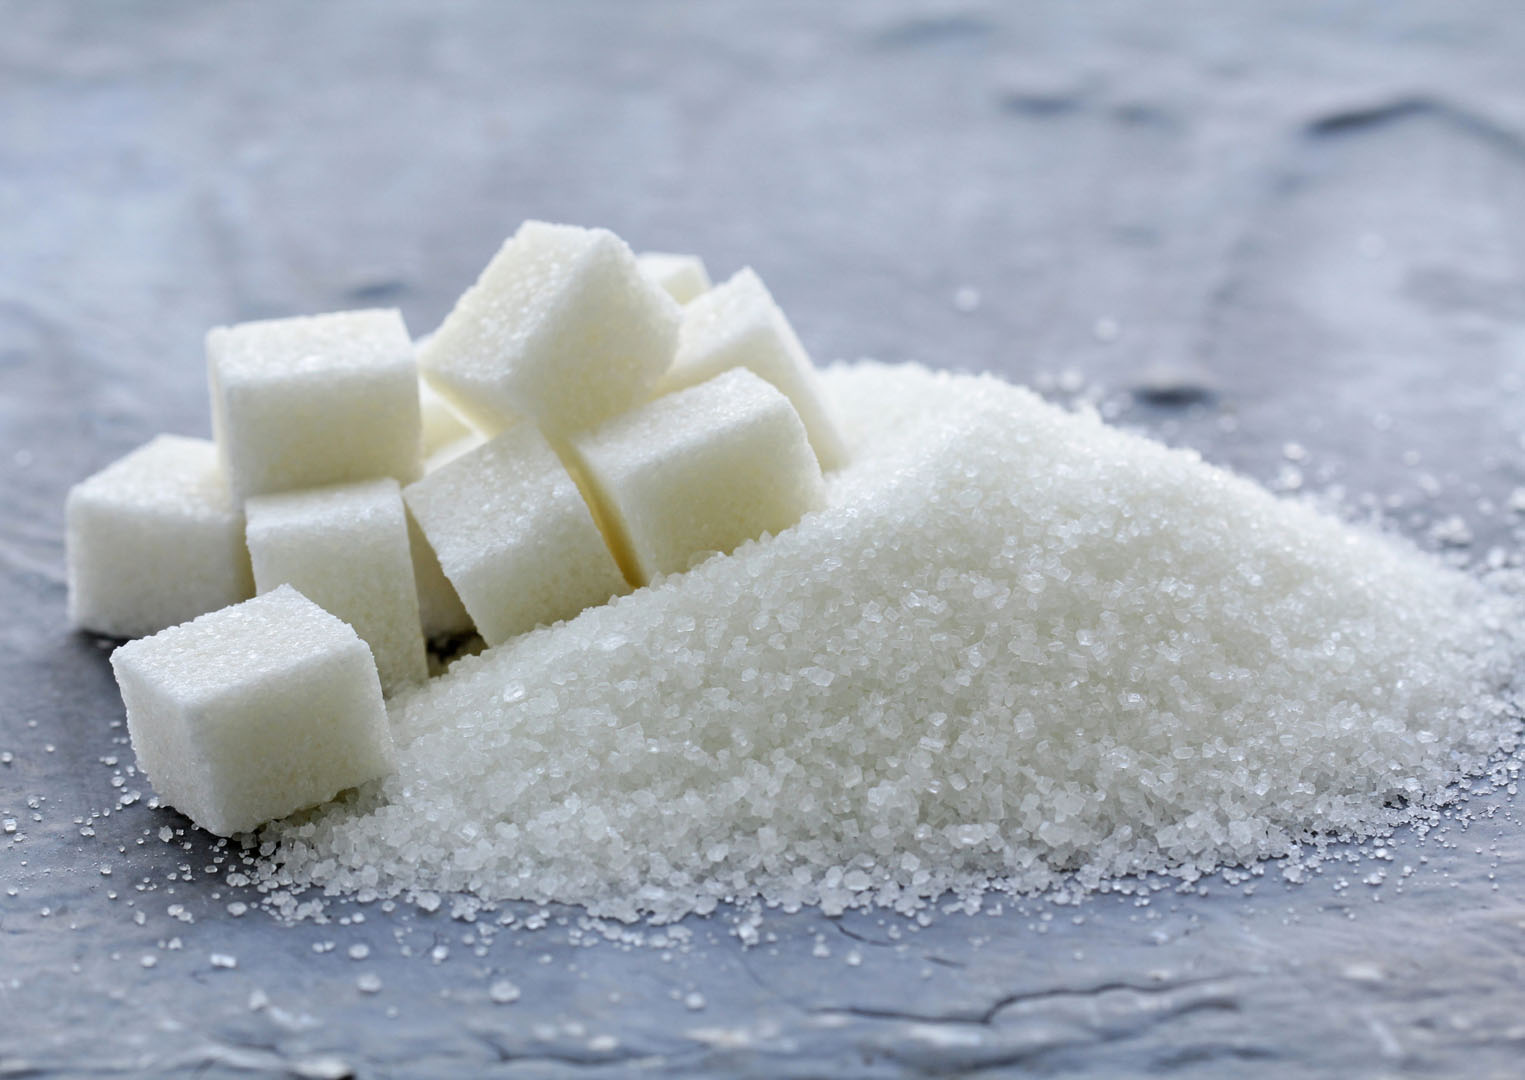 Türkiye şeker üretiminde rekor kırdı: Üretilen şeker talebi karşılamaya yeter